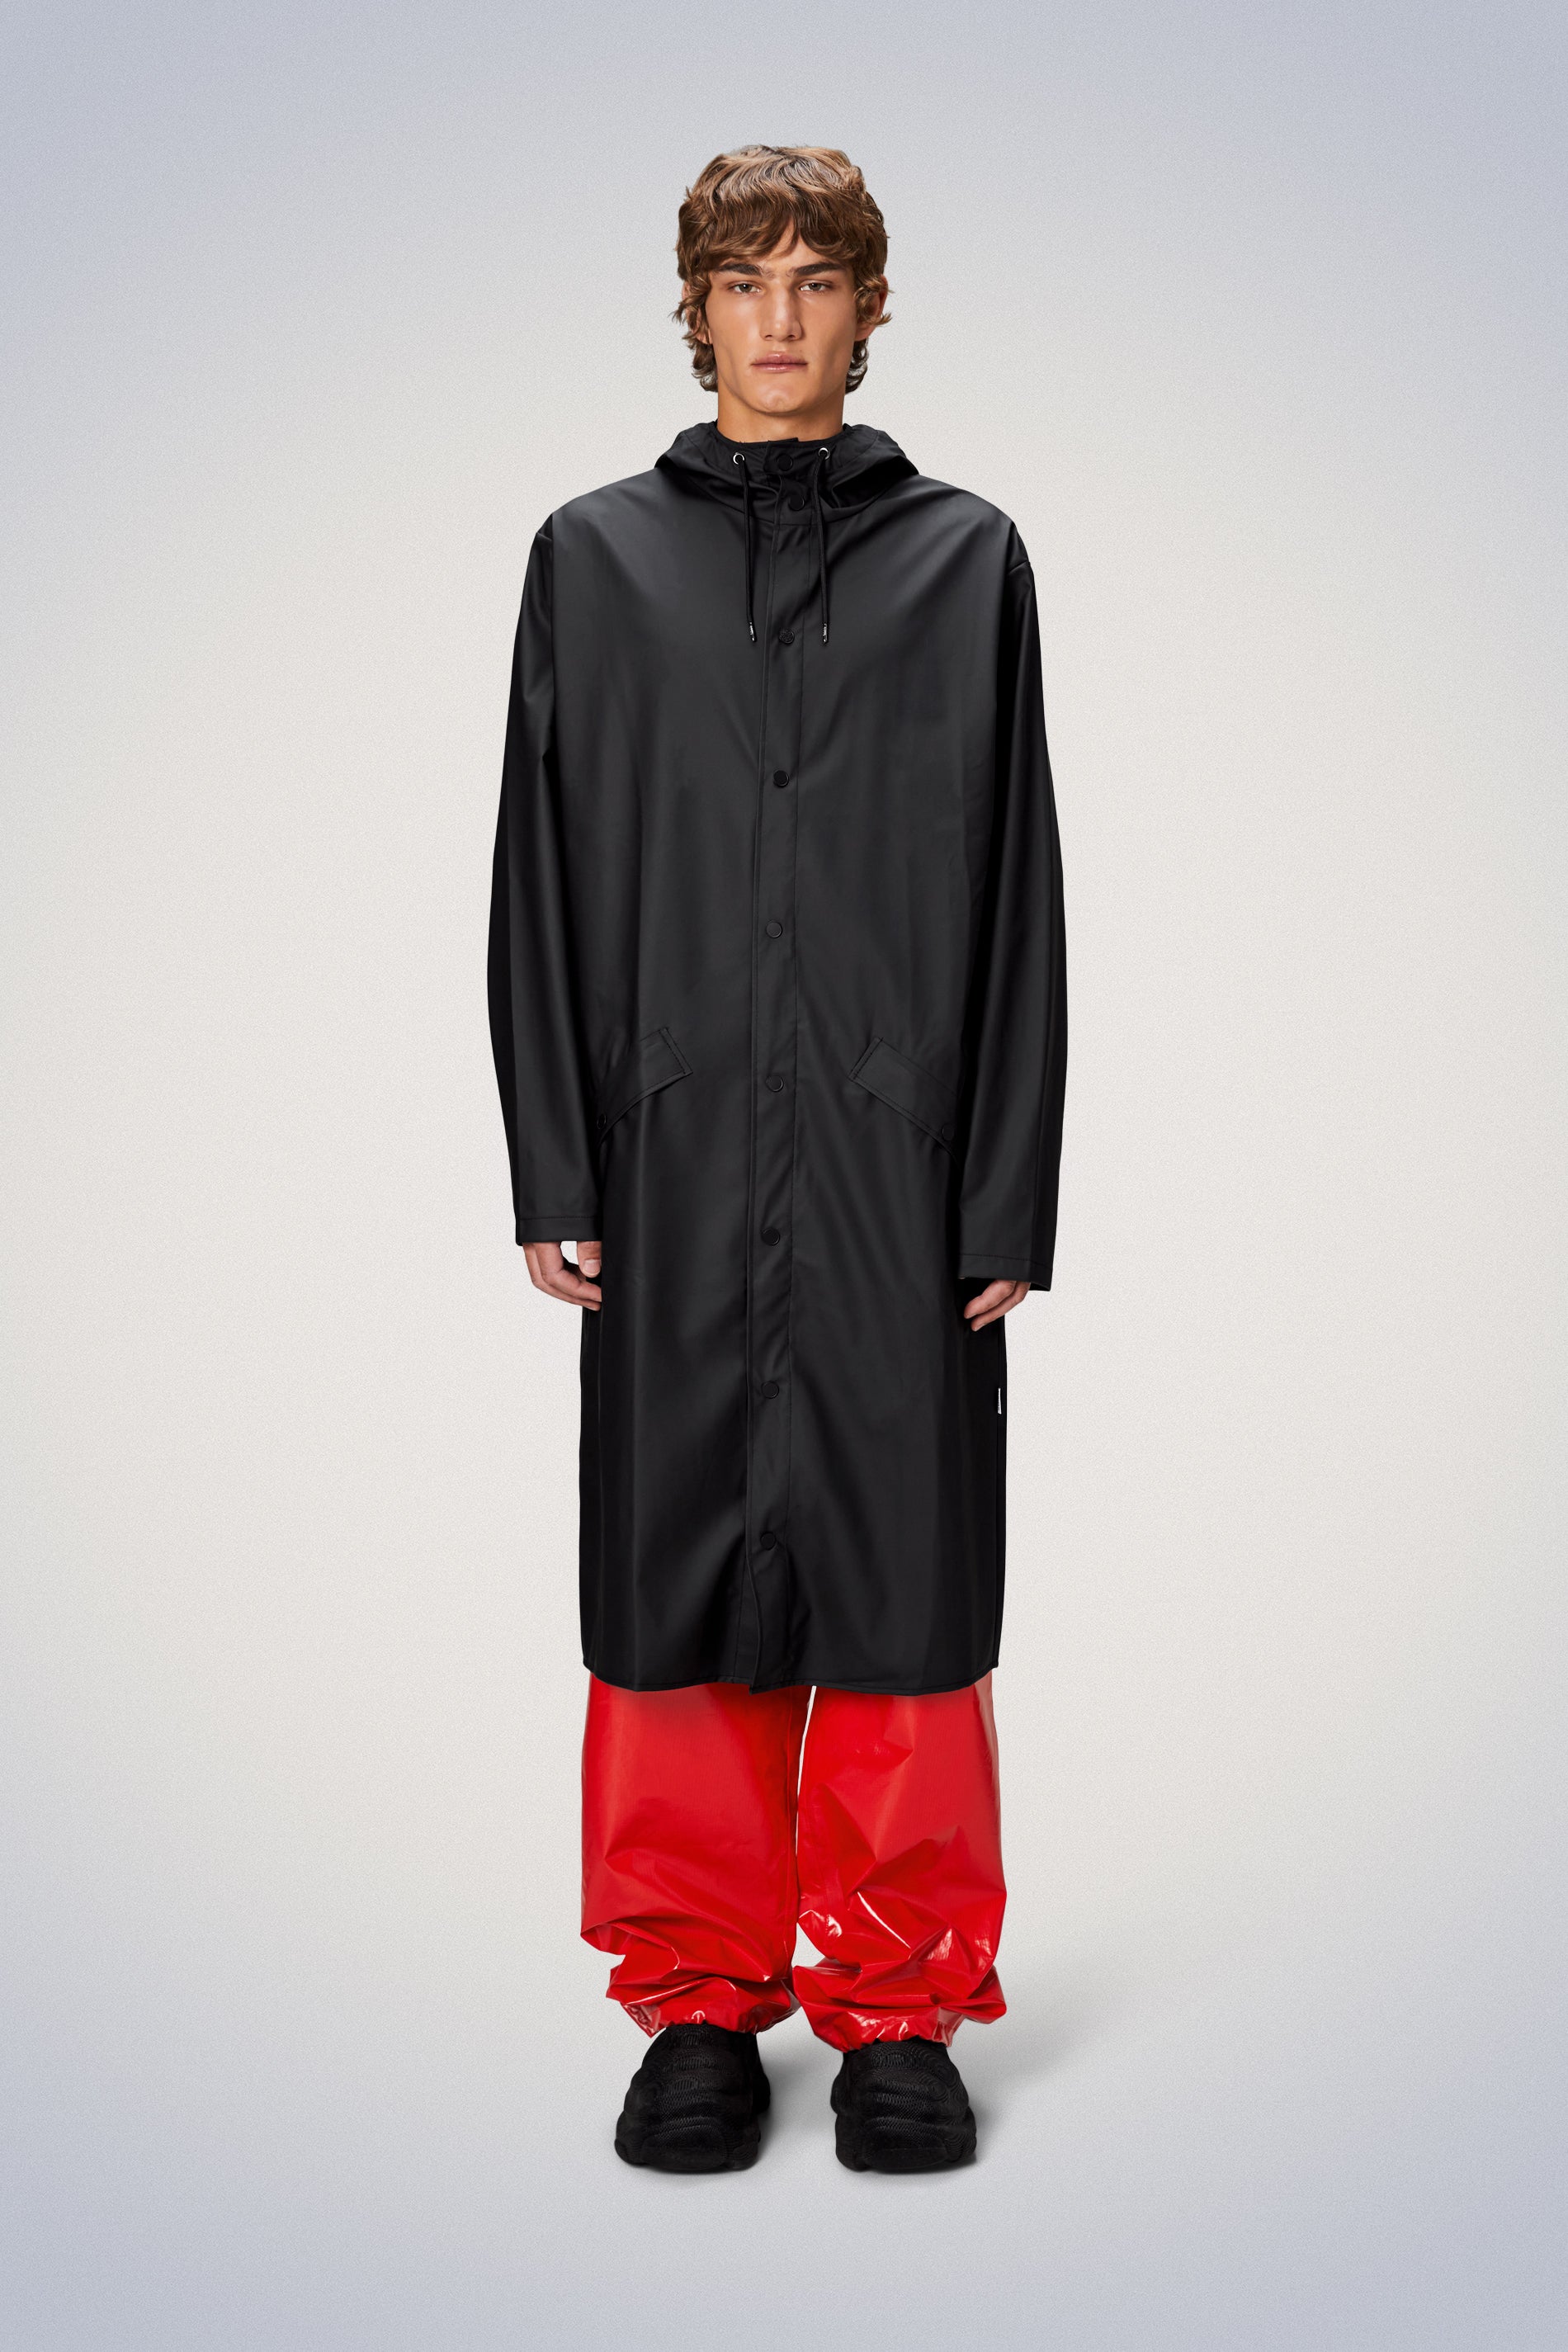 Waterproof Rain Jackets & Coats for Men | Men's Raincoats